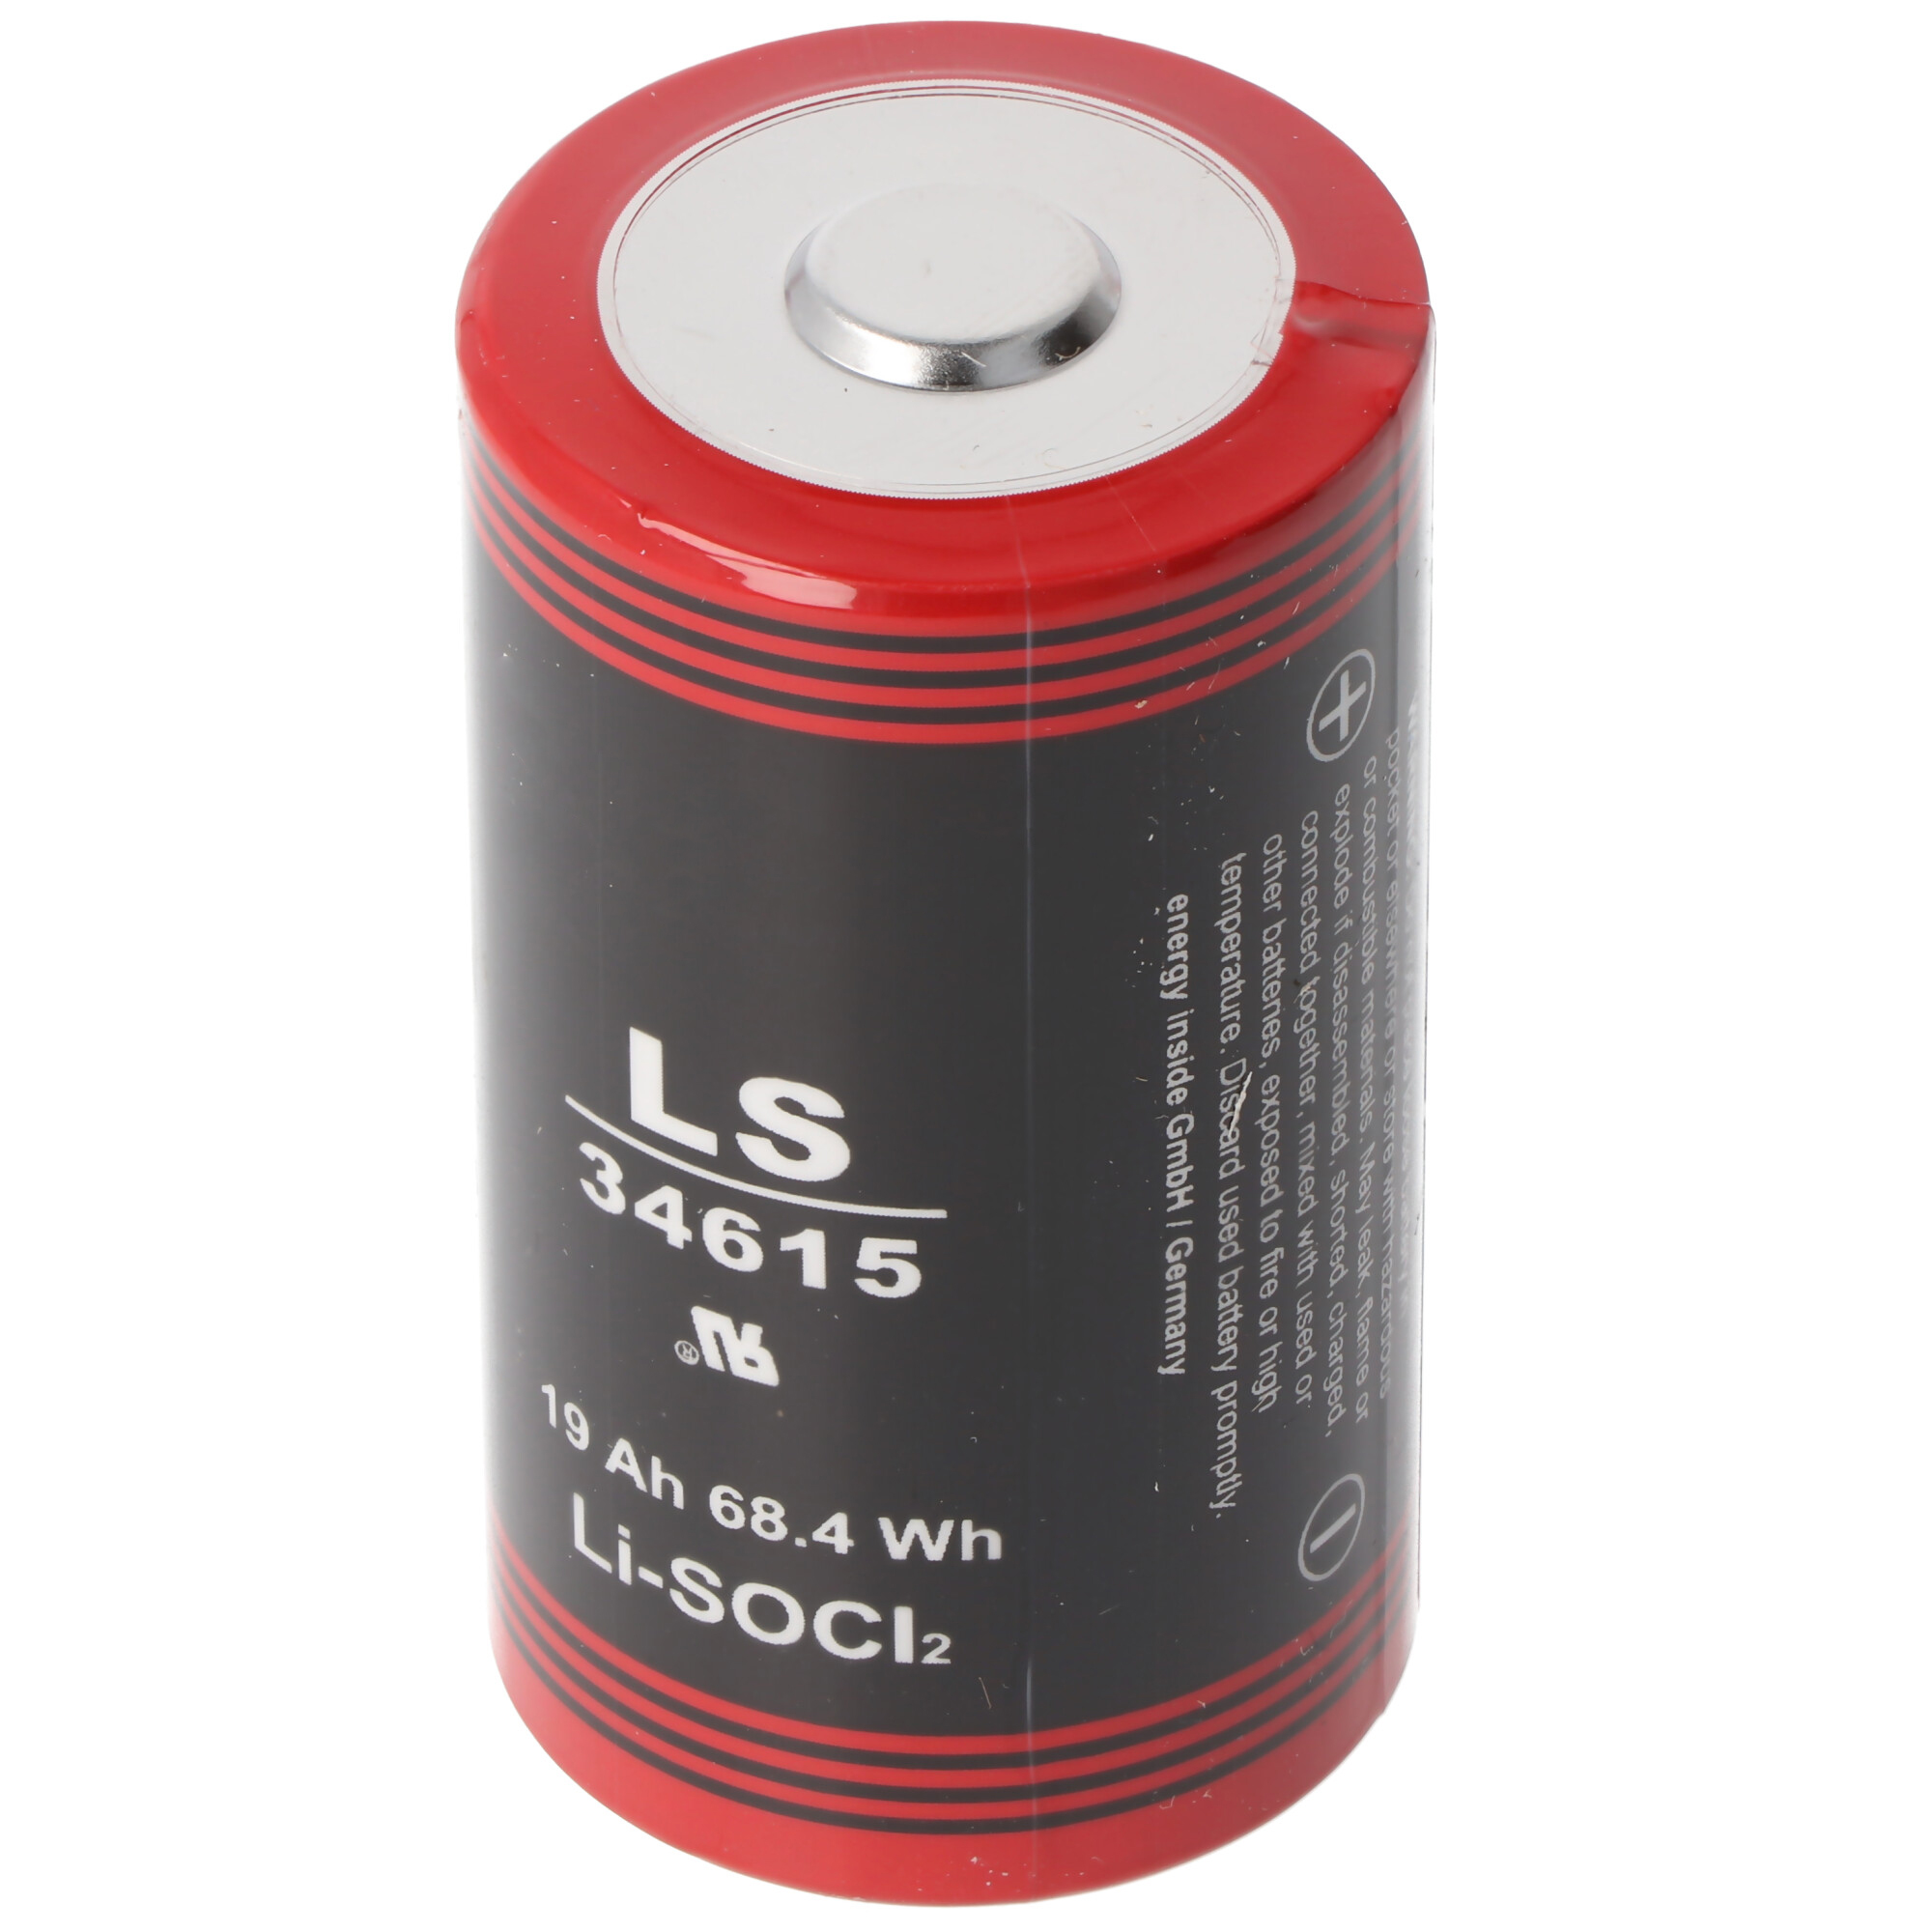 ER34615 Pile Lithium D Mono 3,6 Volts 19000mAh avec pôle positif large min.  0,8cm, max. 11.5mm, Autres, Piles au lithium, Piles